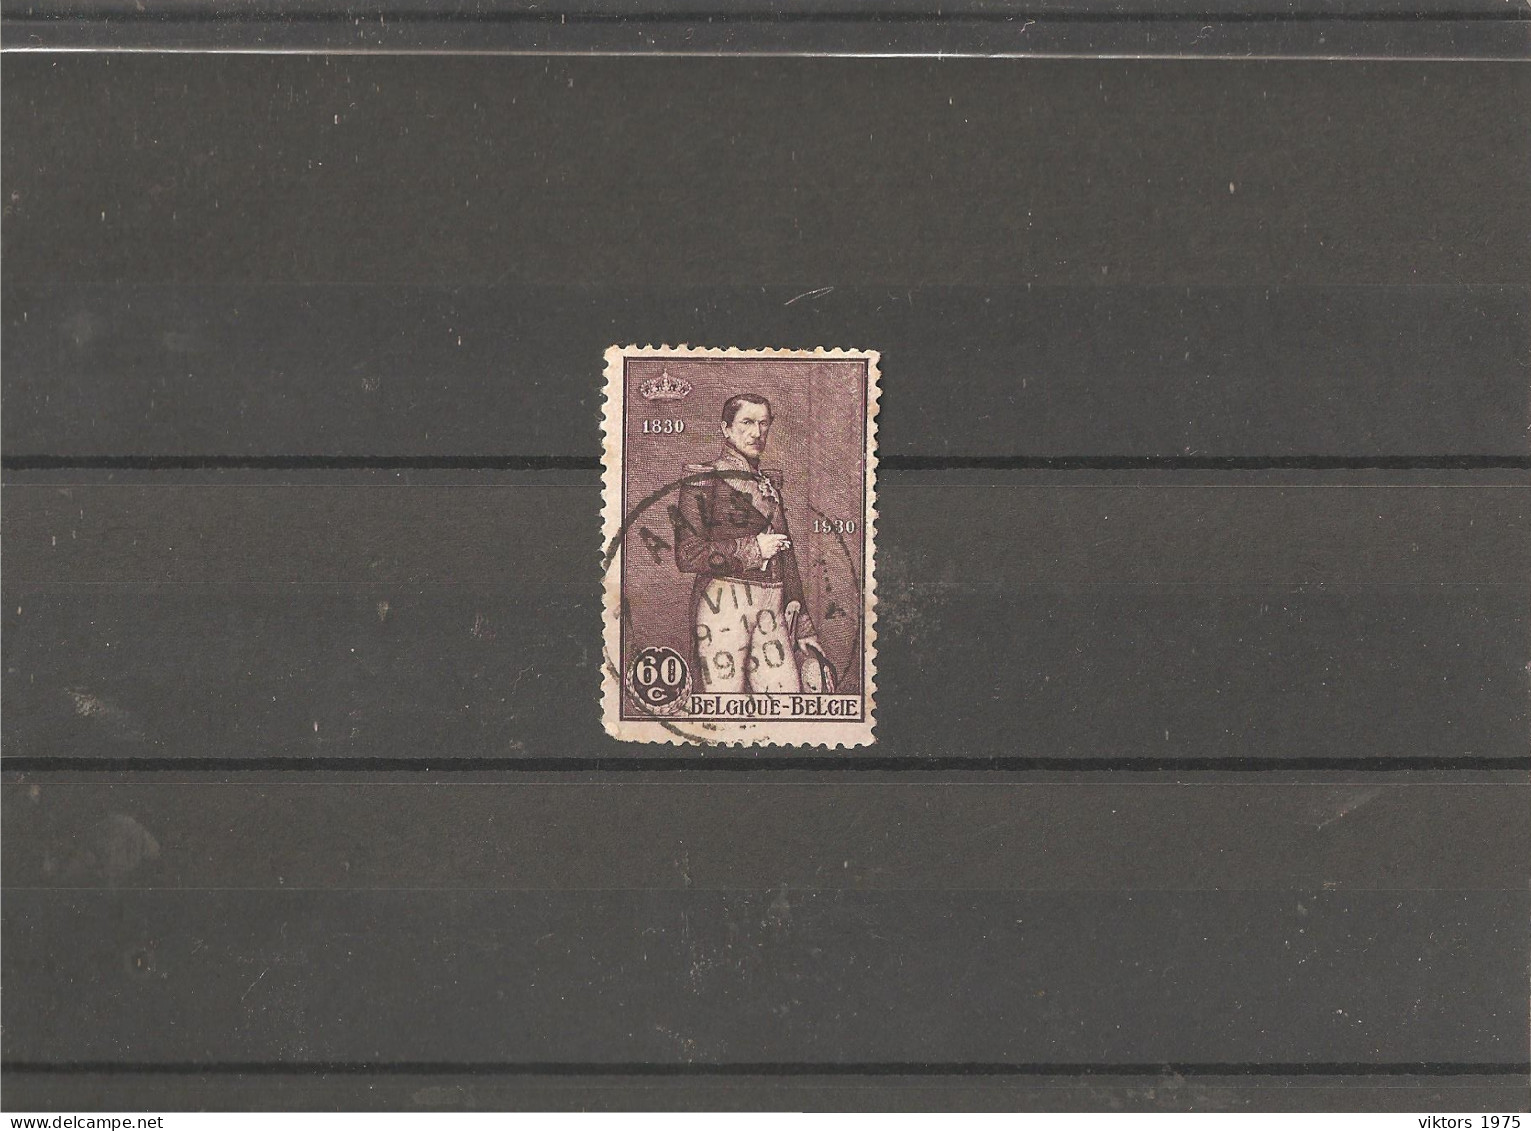 Used Stamp Nr.284 In MICHEL Catalog - Gebruikt